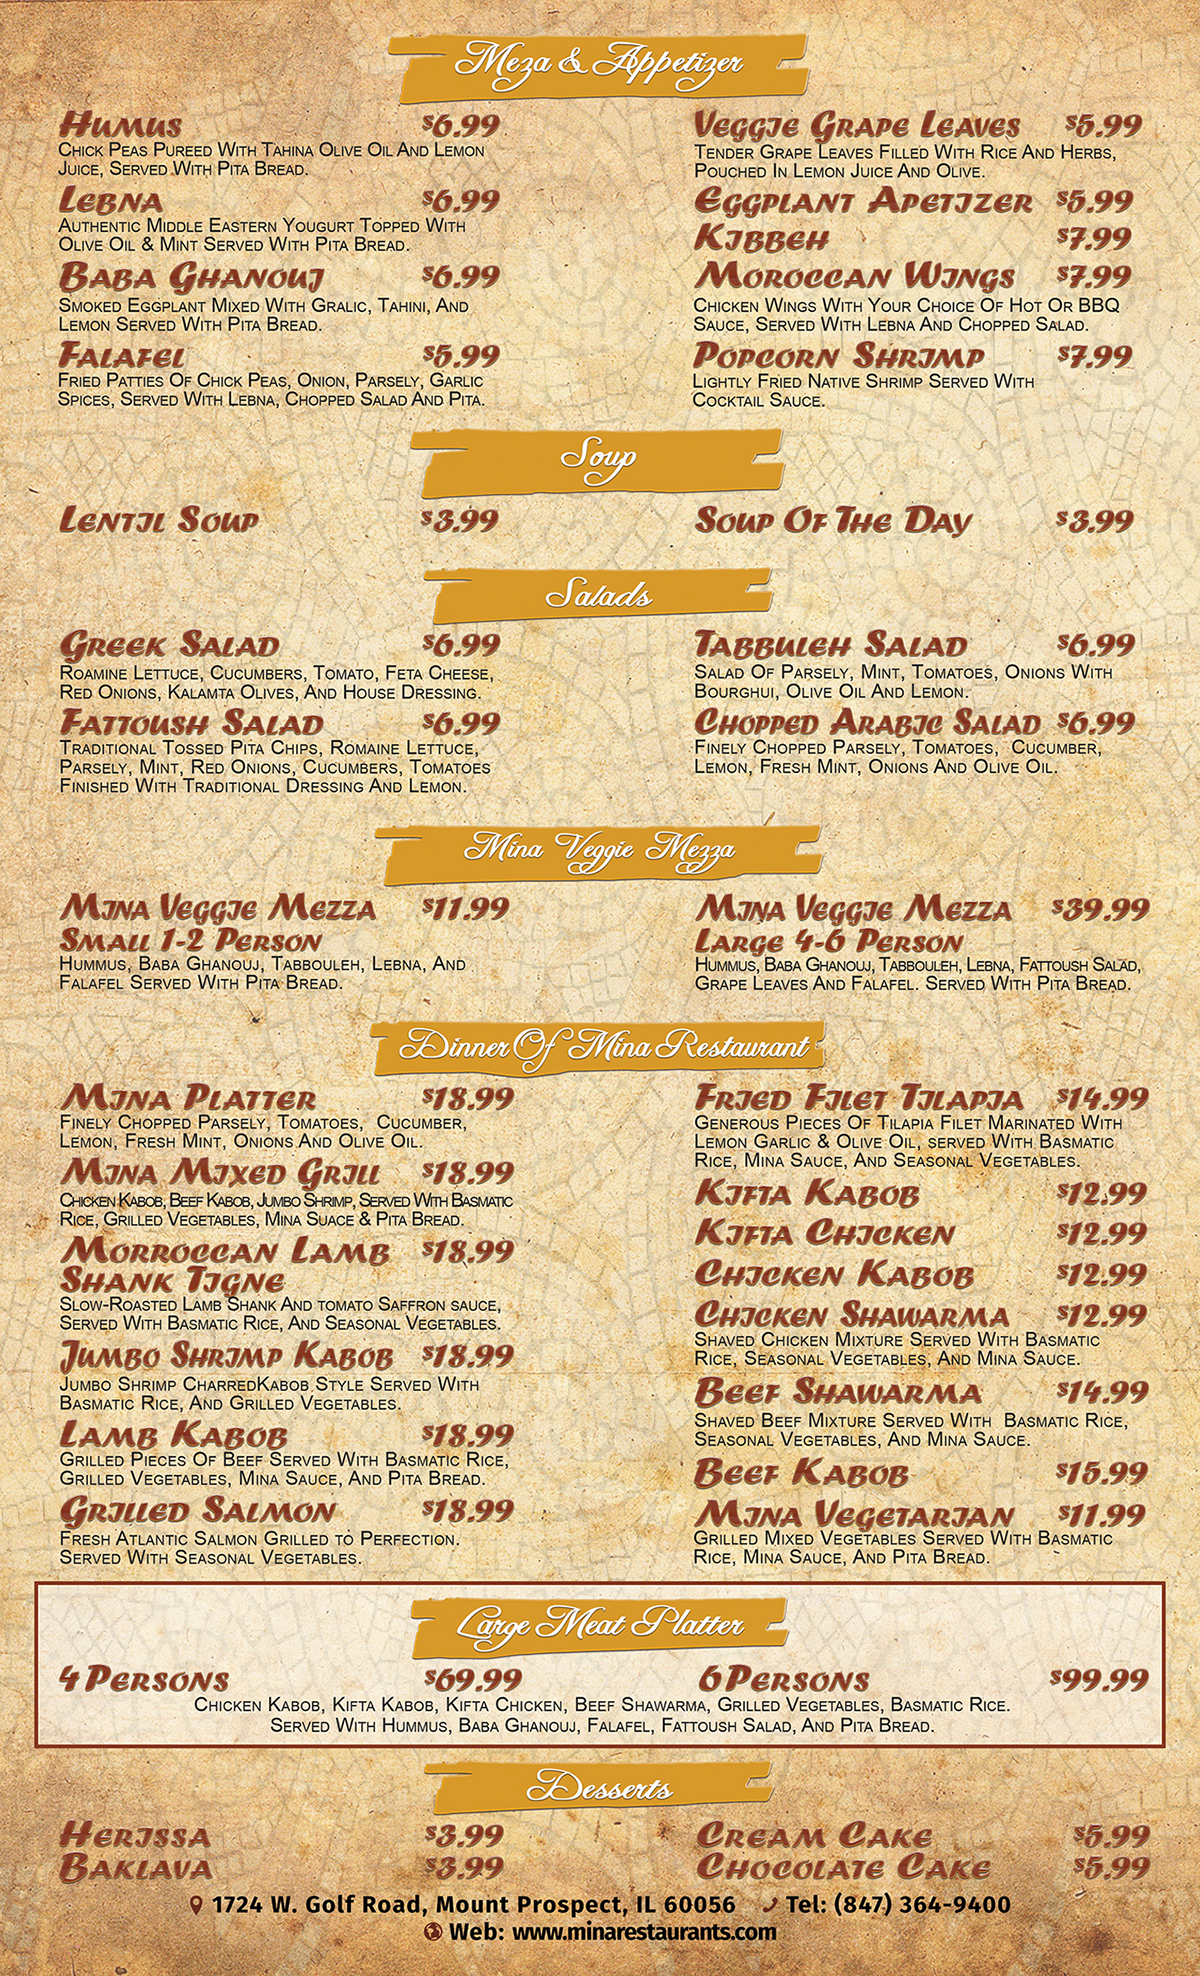 Restaurant Menu Designs menu designs menu design menu layout